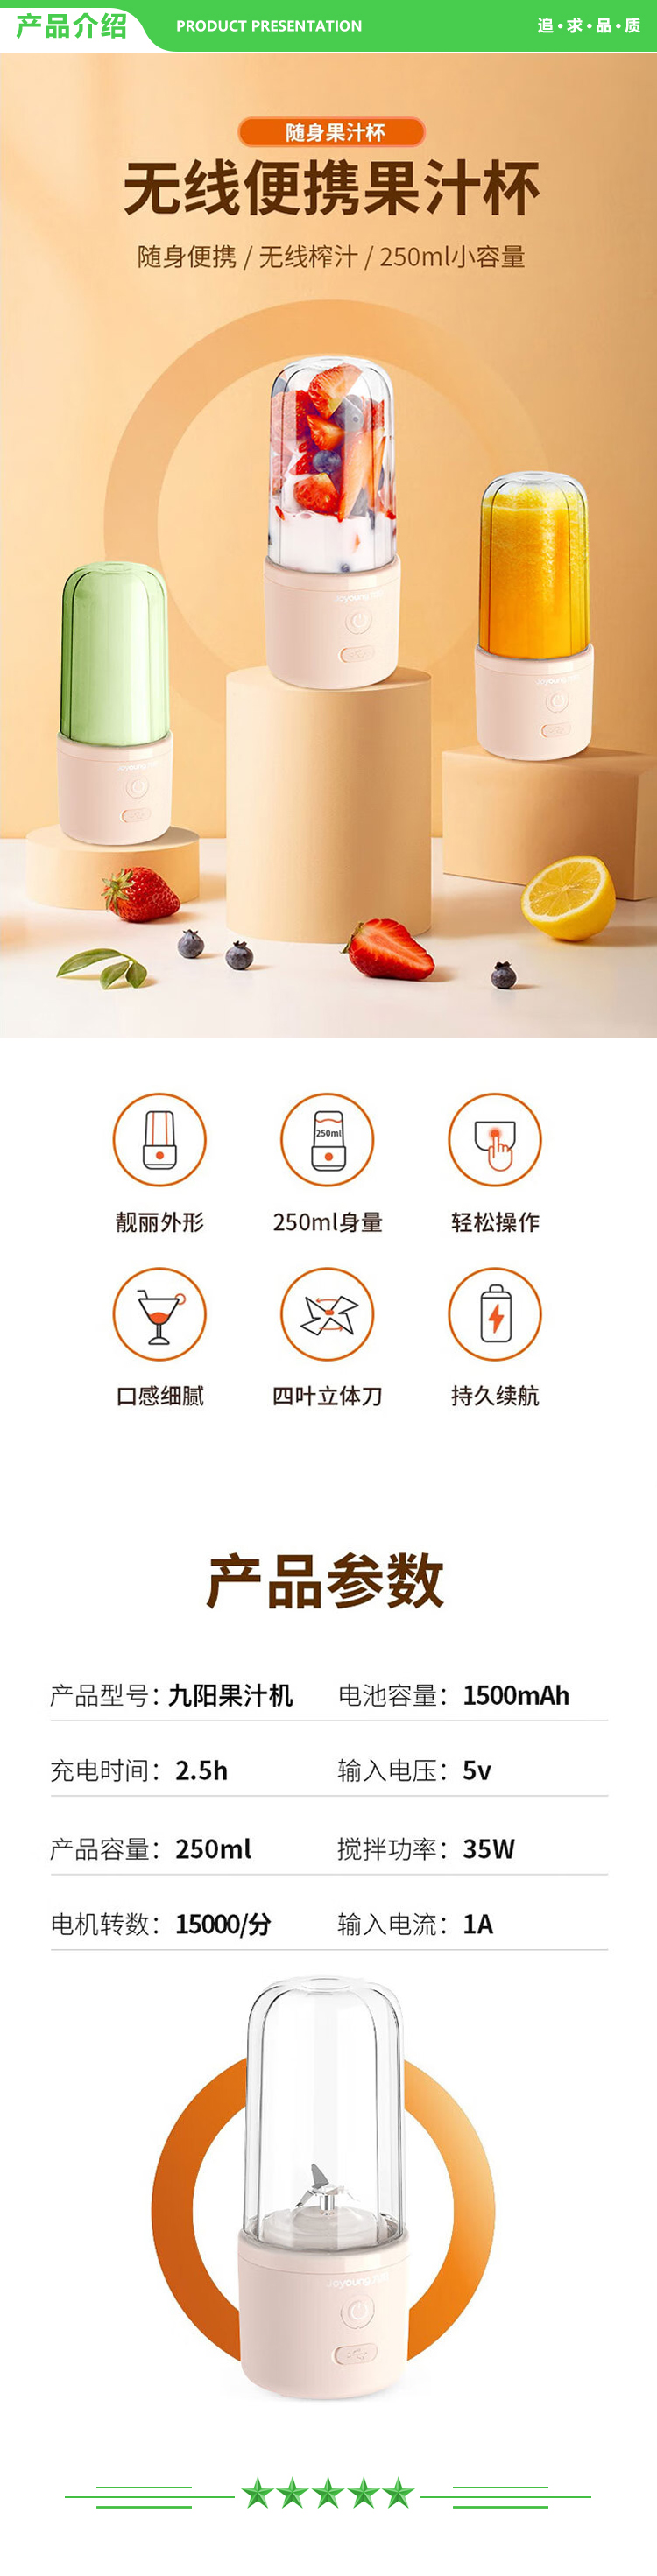 九阳 Joyoung L3-C61 便携式电动榨汁机迷你果汁杯多功能随行杯.jpg